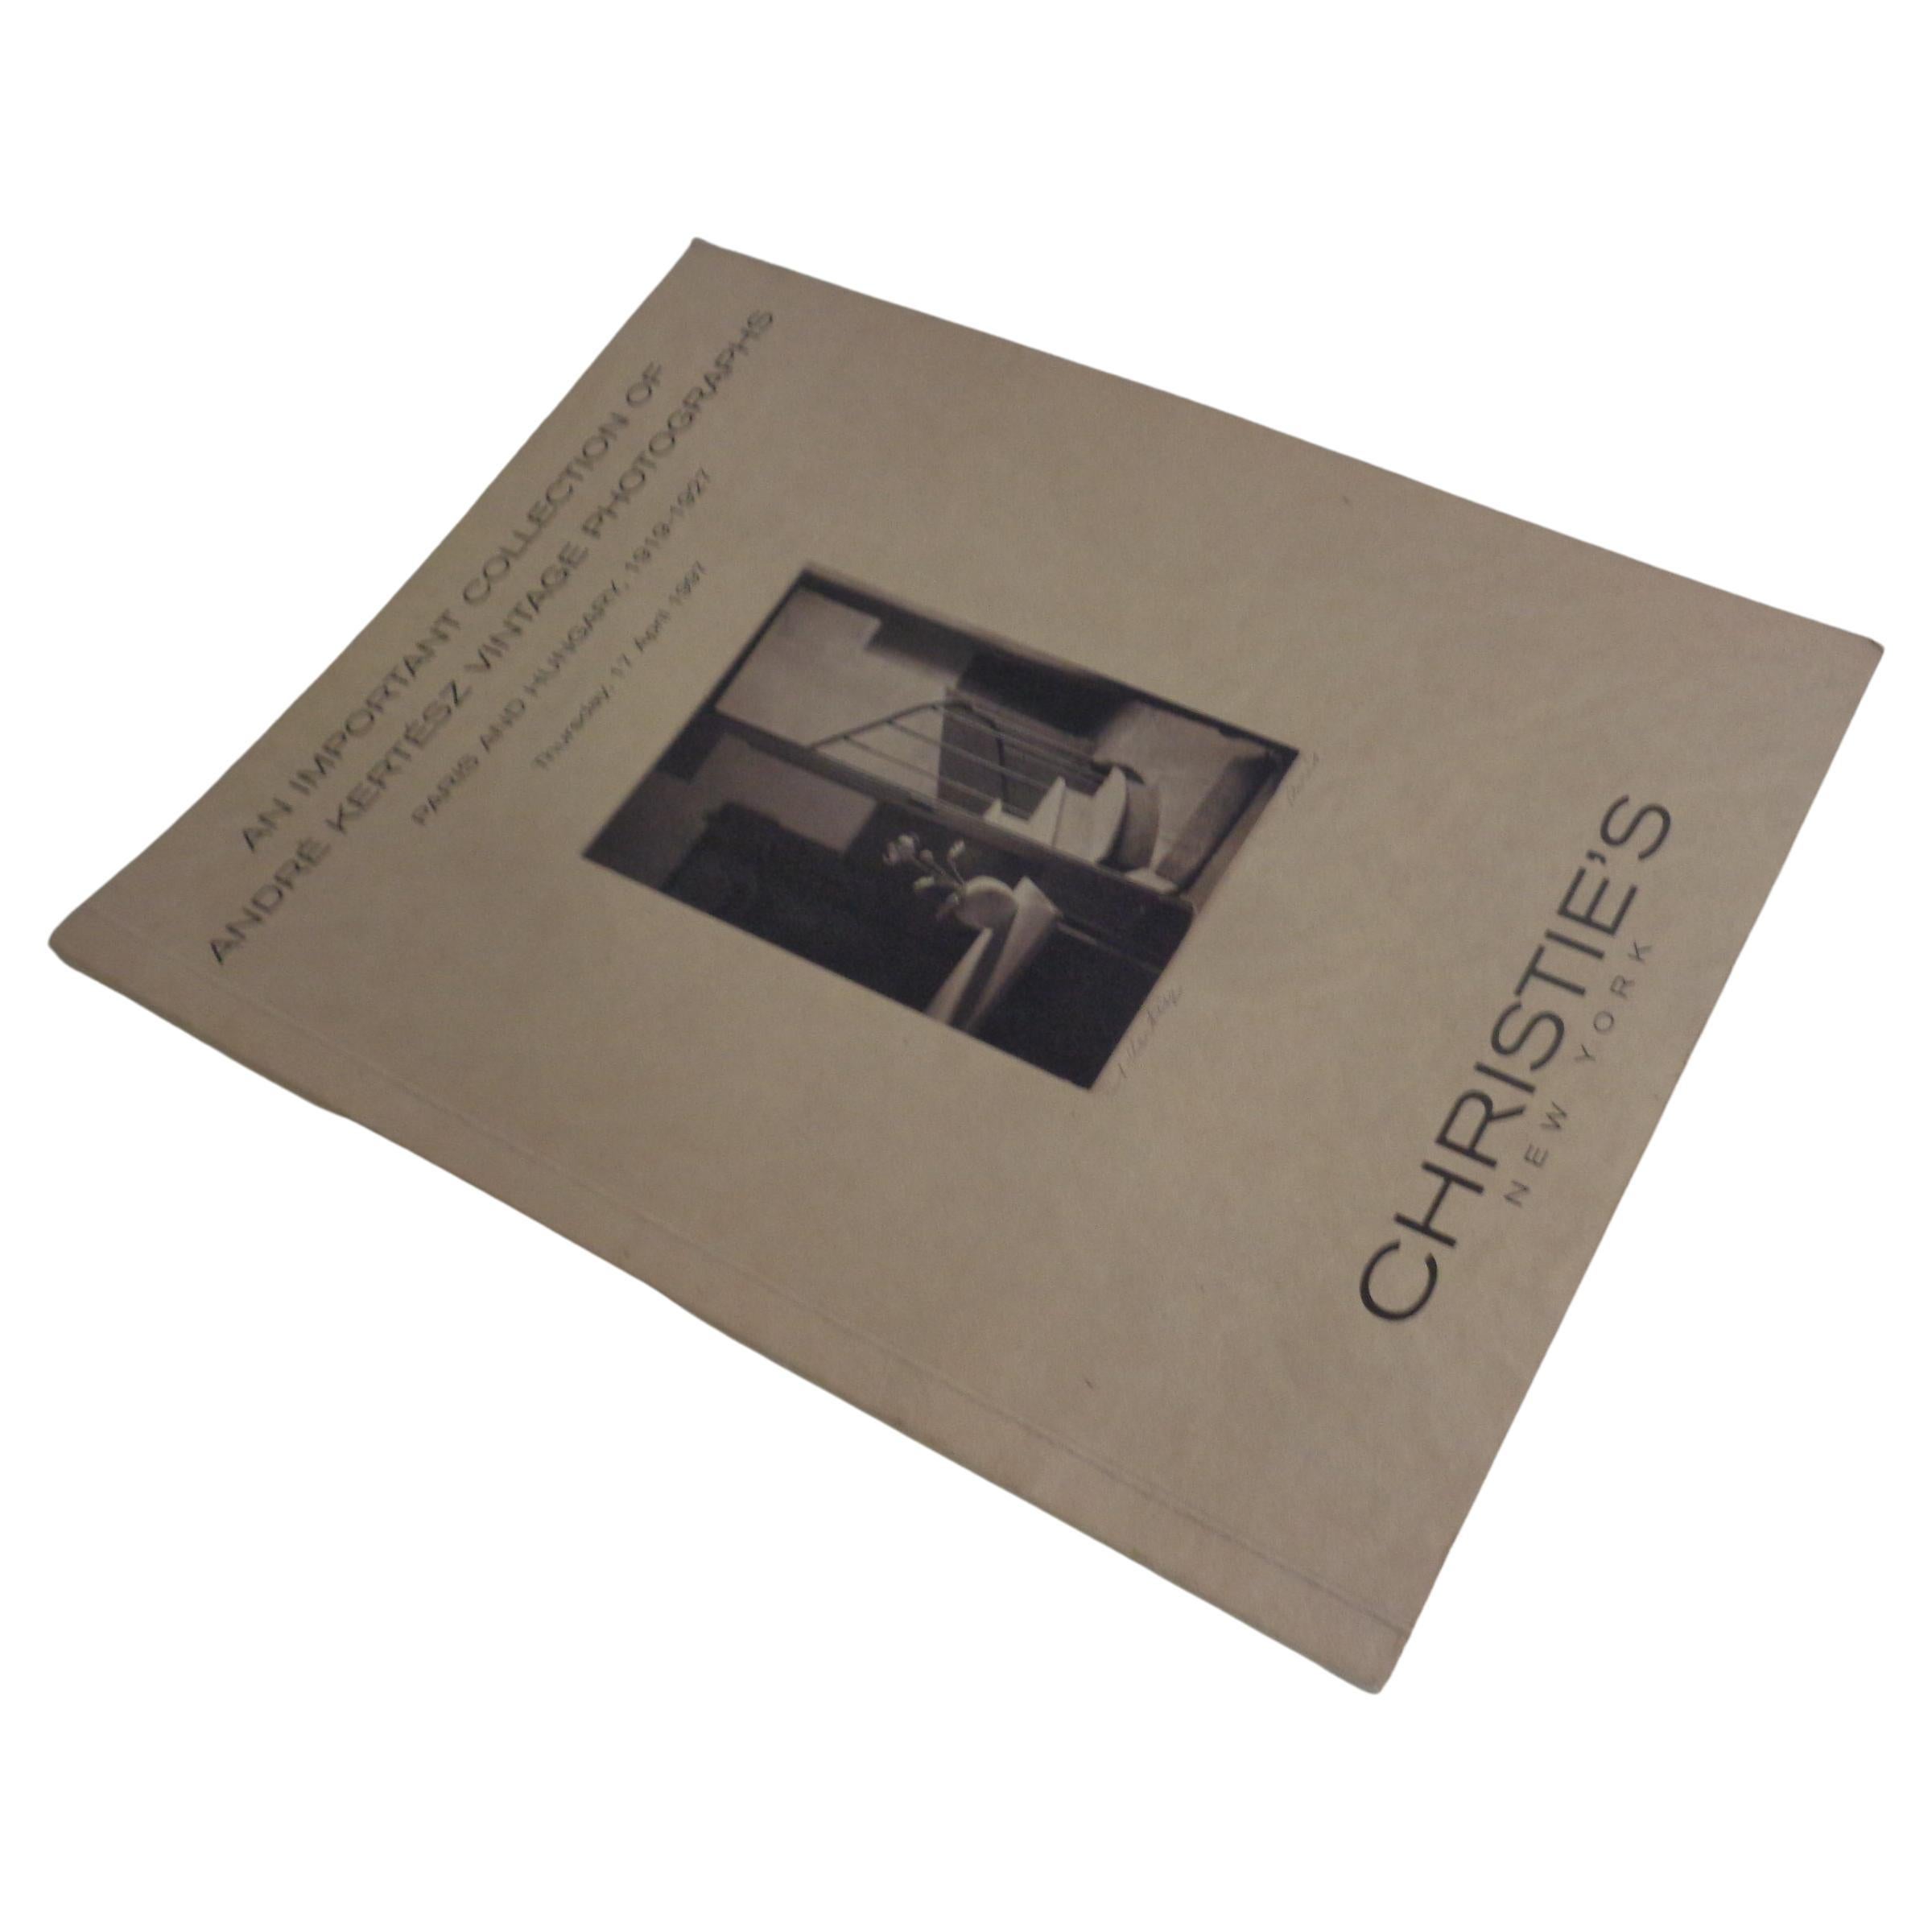 Une importante collection de photographies d'époque d'Andre Kertesz - 1997 Christie's  en vente 7